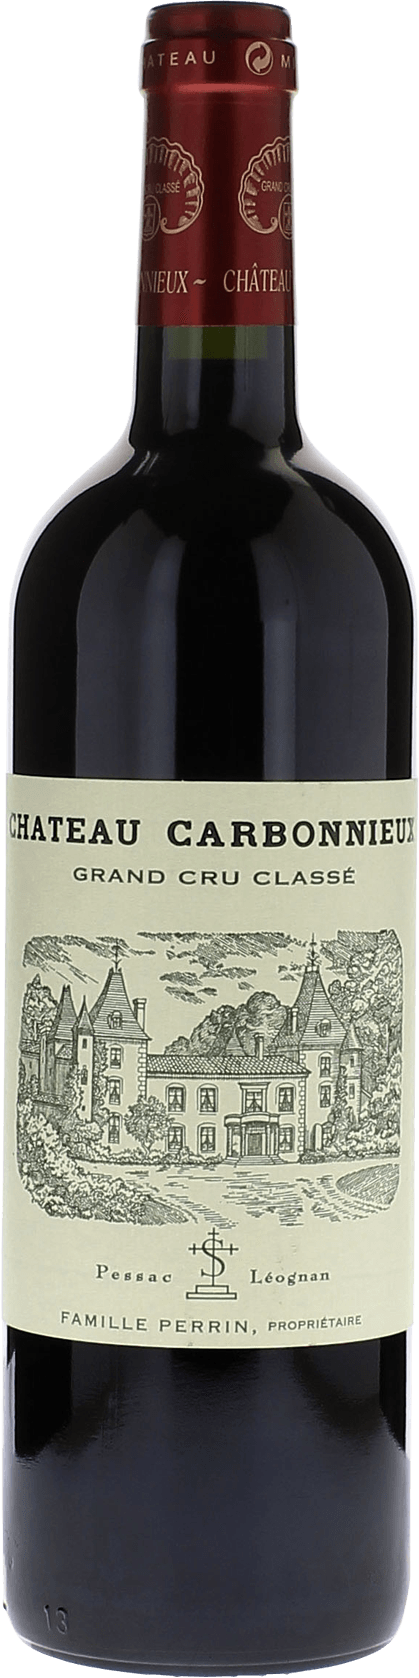 Carbonnieux 2000 cru class Pessac-Lognan, Bordeaux rouge